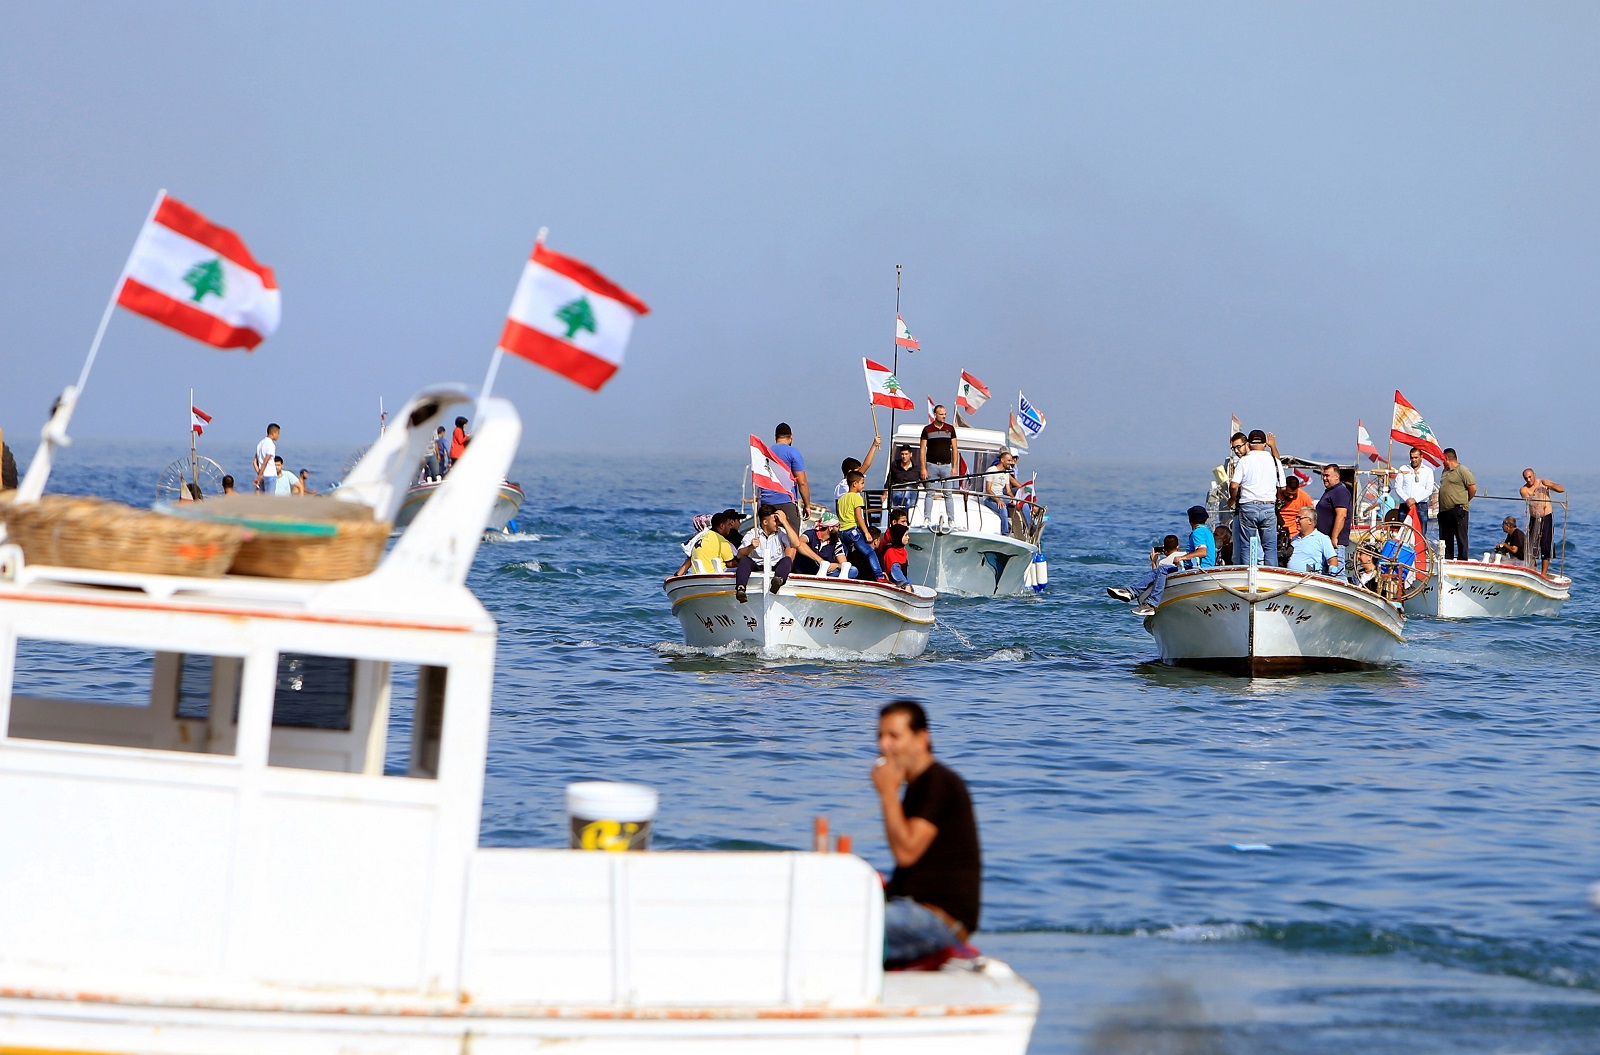 بعد أشهر من المفاوضات المضنية.. لبنان وإسرائيل يبرمان اتفاق ترسيم الحدود البحرية